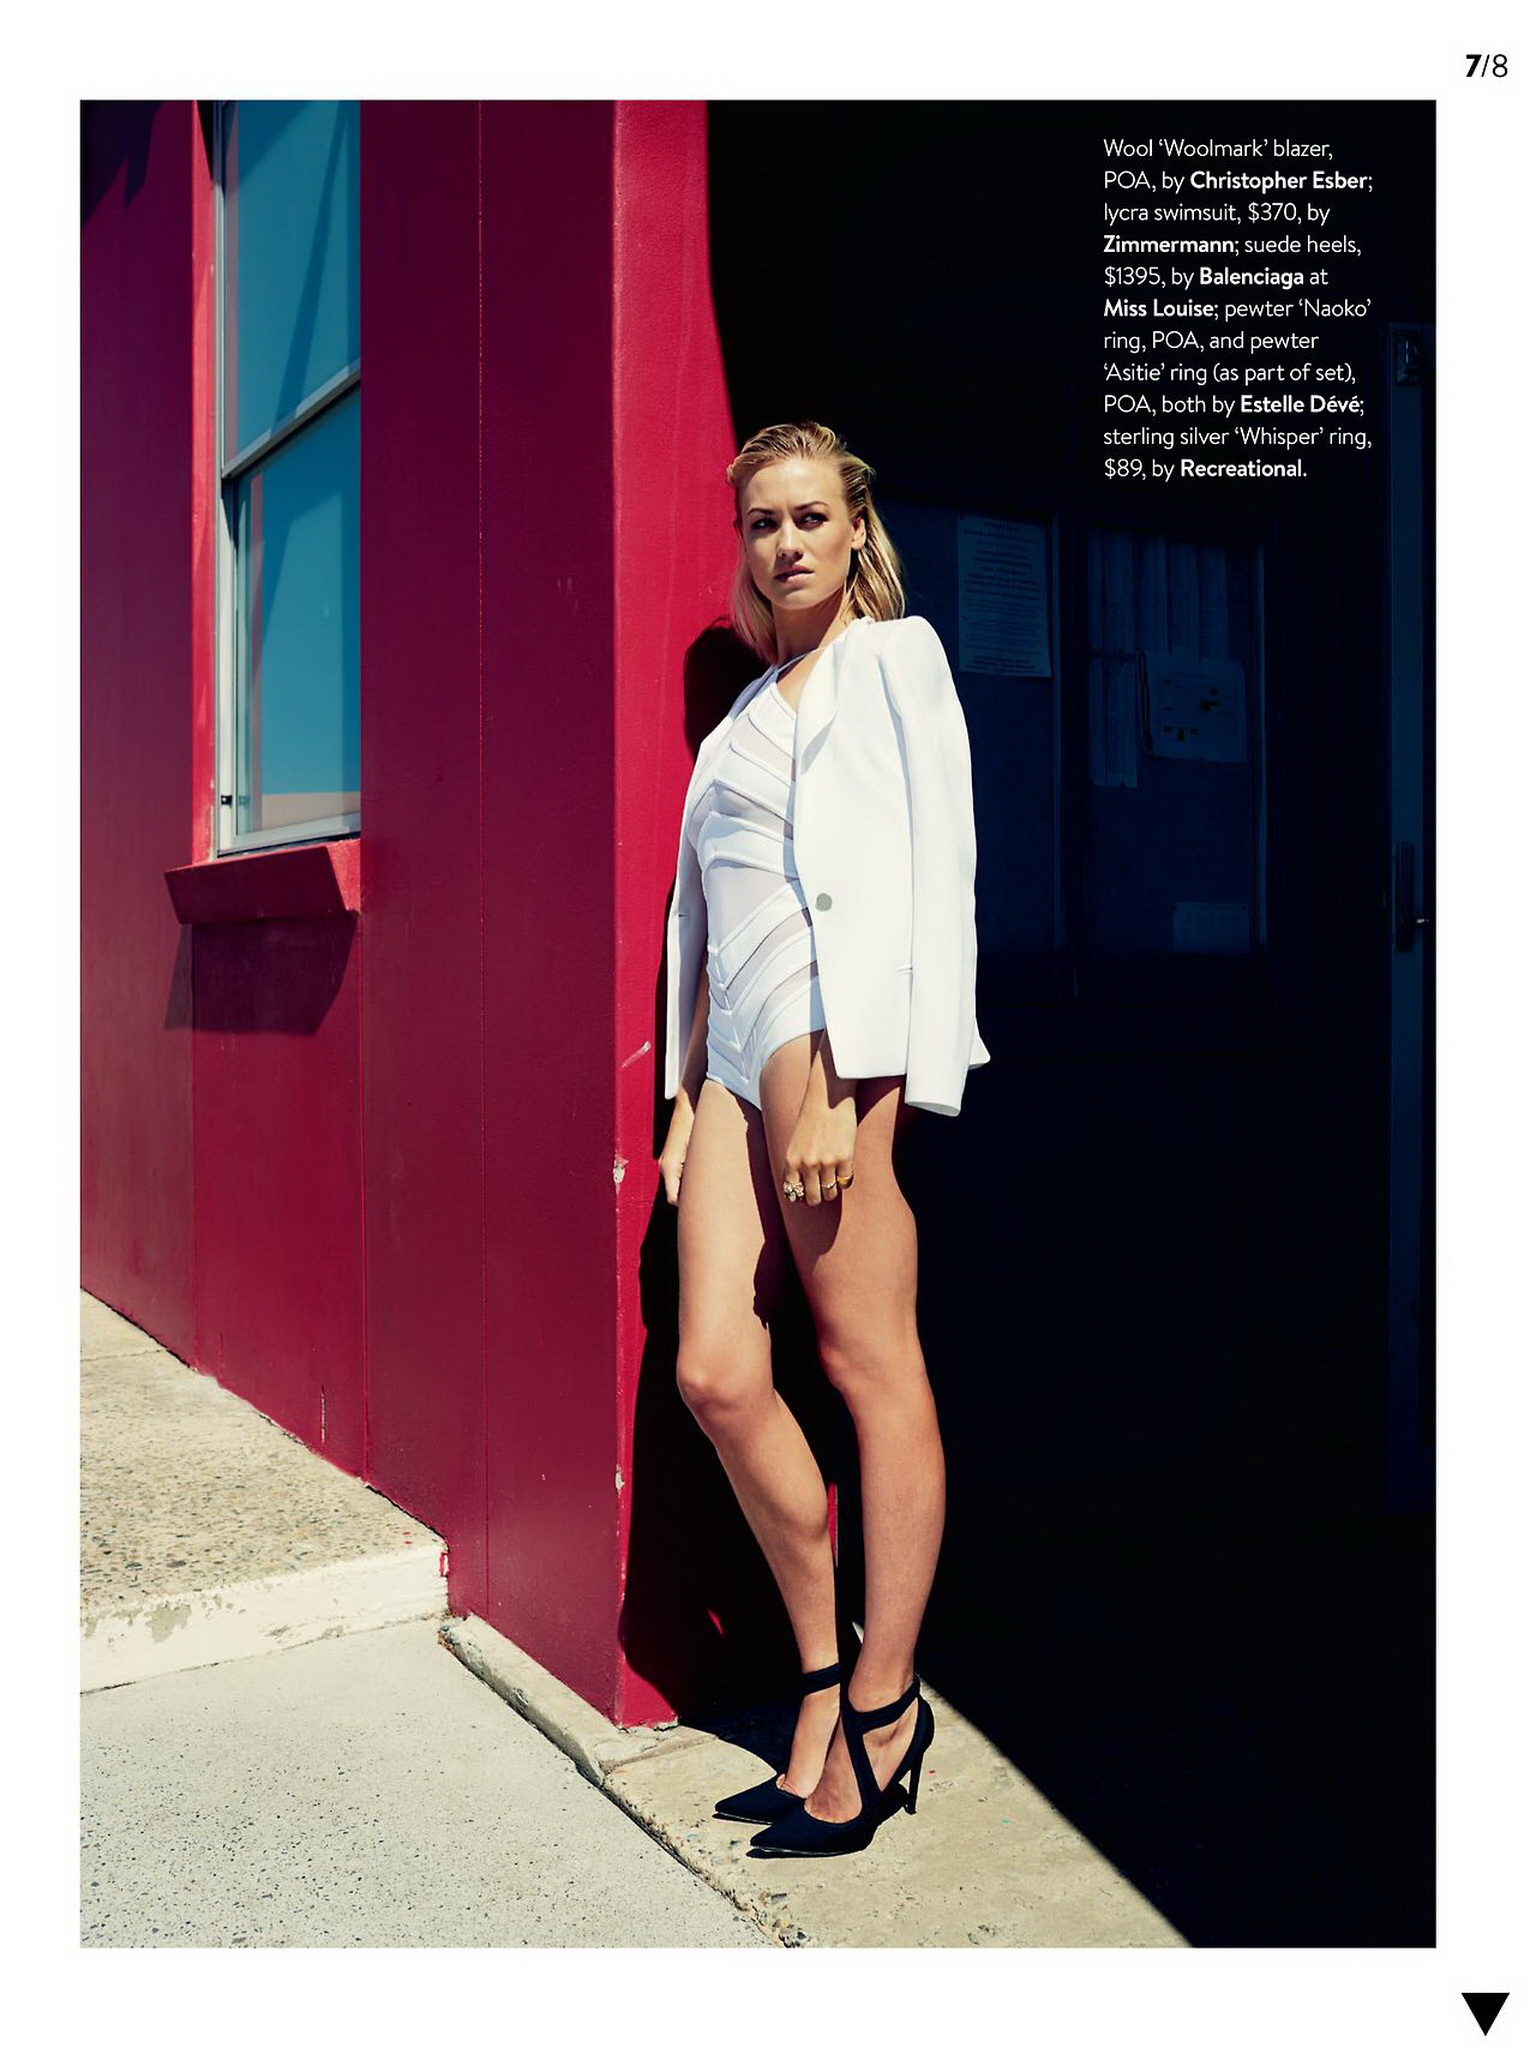 Yvonne_Strahovski_sexy_GQ_Australia_Magazine_2015_February_2015_8x_HQ_11.jpg